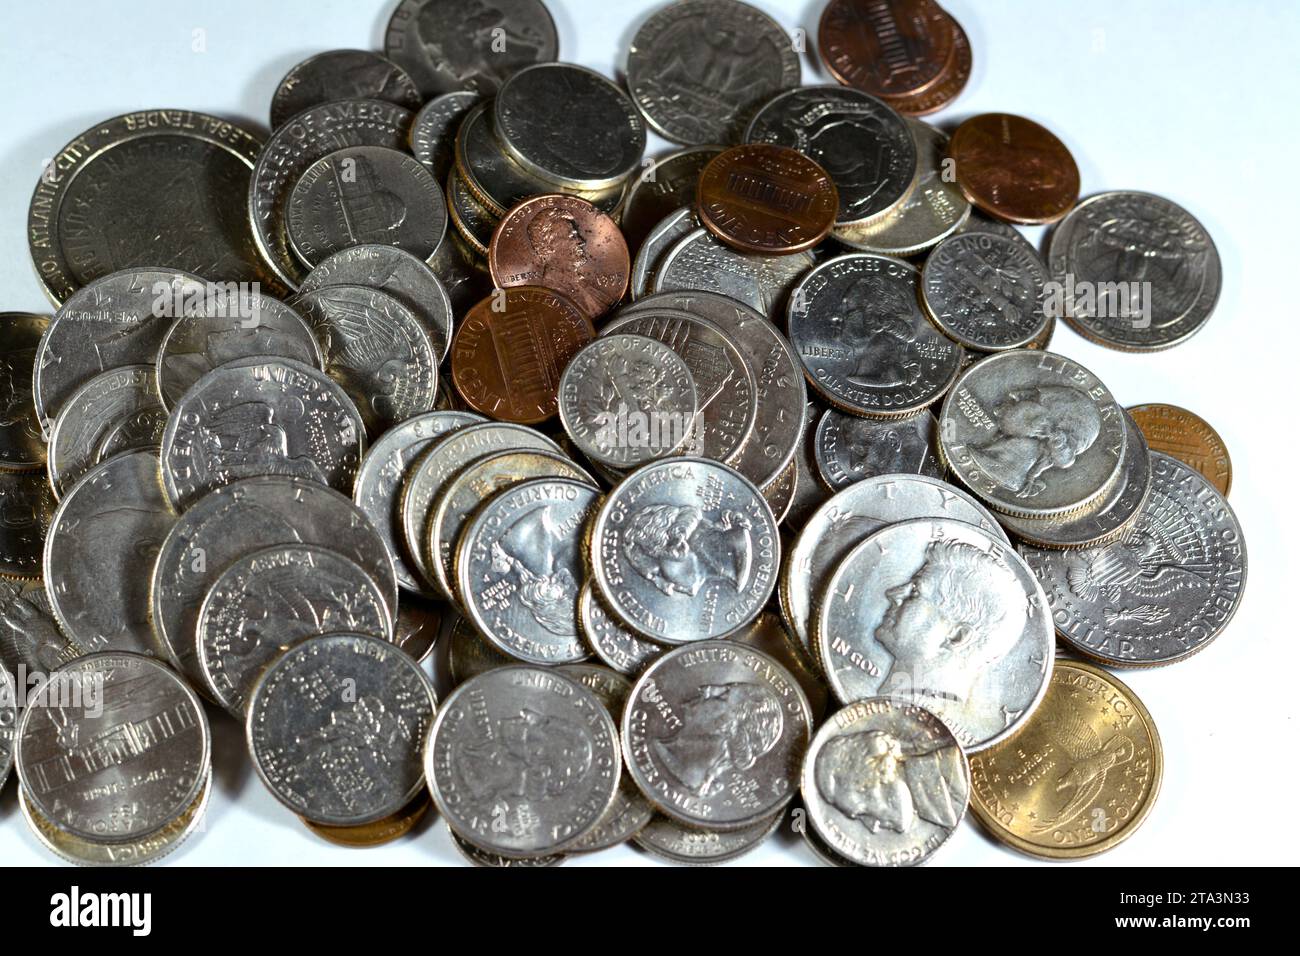 Mucchio di monete americane di tempi e valori diversi, 1 centesimo, dimes, quarti, mezzo dollaro, e dollari, vecchi Stati Uniti d'America in stile retrò d'epoca Foto Stock